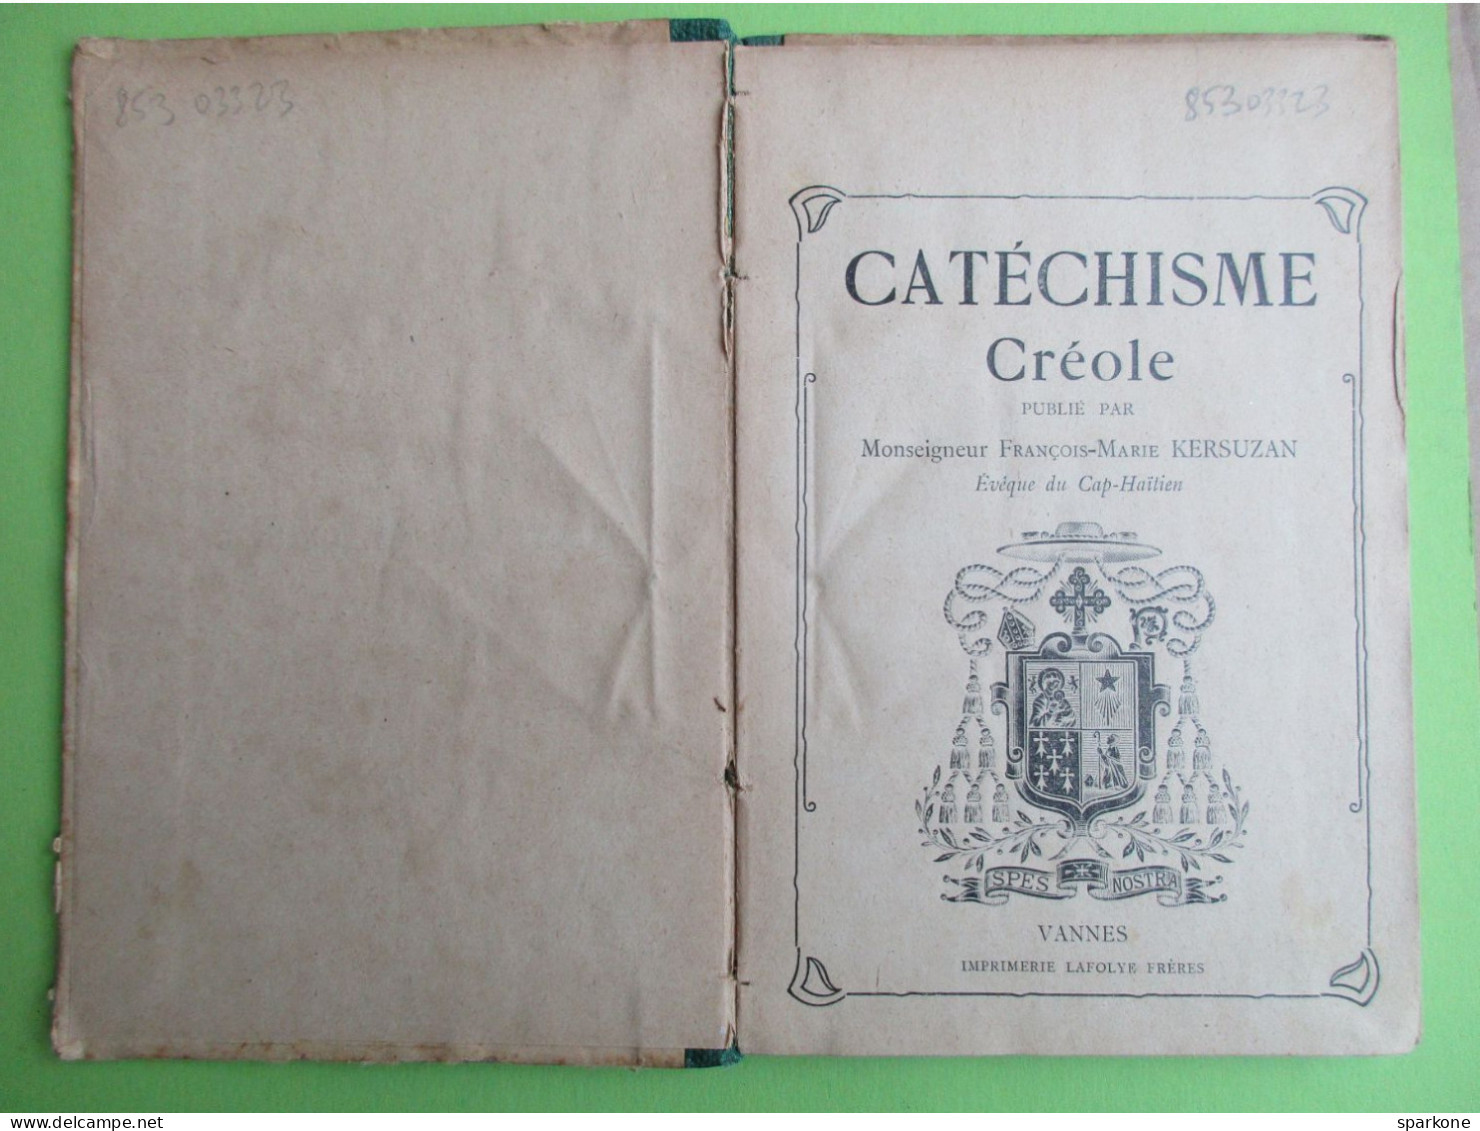 Catéchisme Créole (Monseigneur François-Martin Kersuzan) éditions Lafolye - Culture